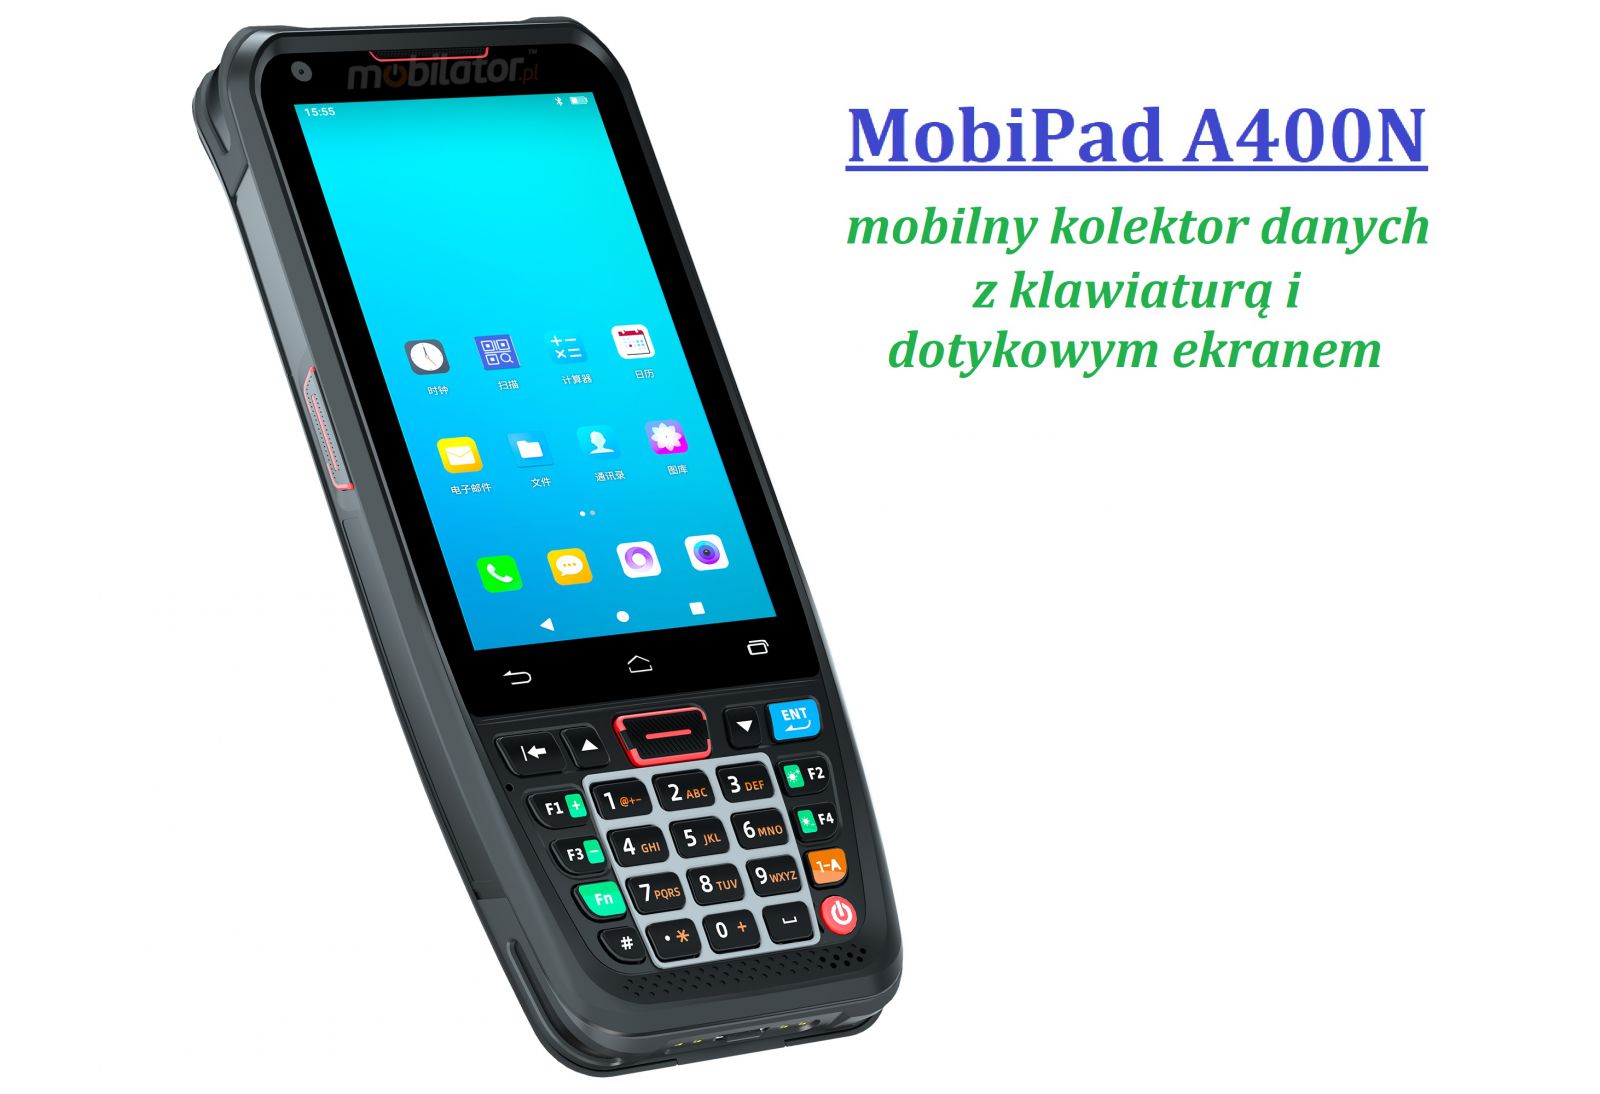 MobiPad A400N v.2 - Wytrzymay kolektor danych, z norm IP66, 3GB RAM, 32GB ROM, moduem NFC oraz skanerem kodw kreskowych 1D